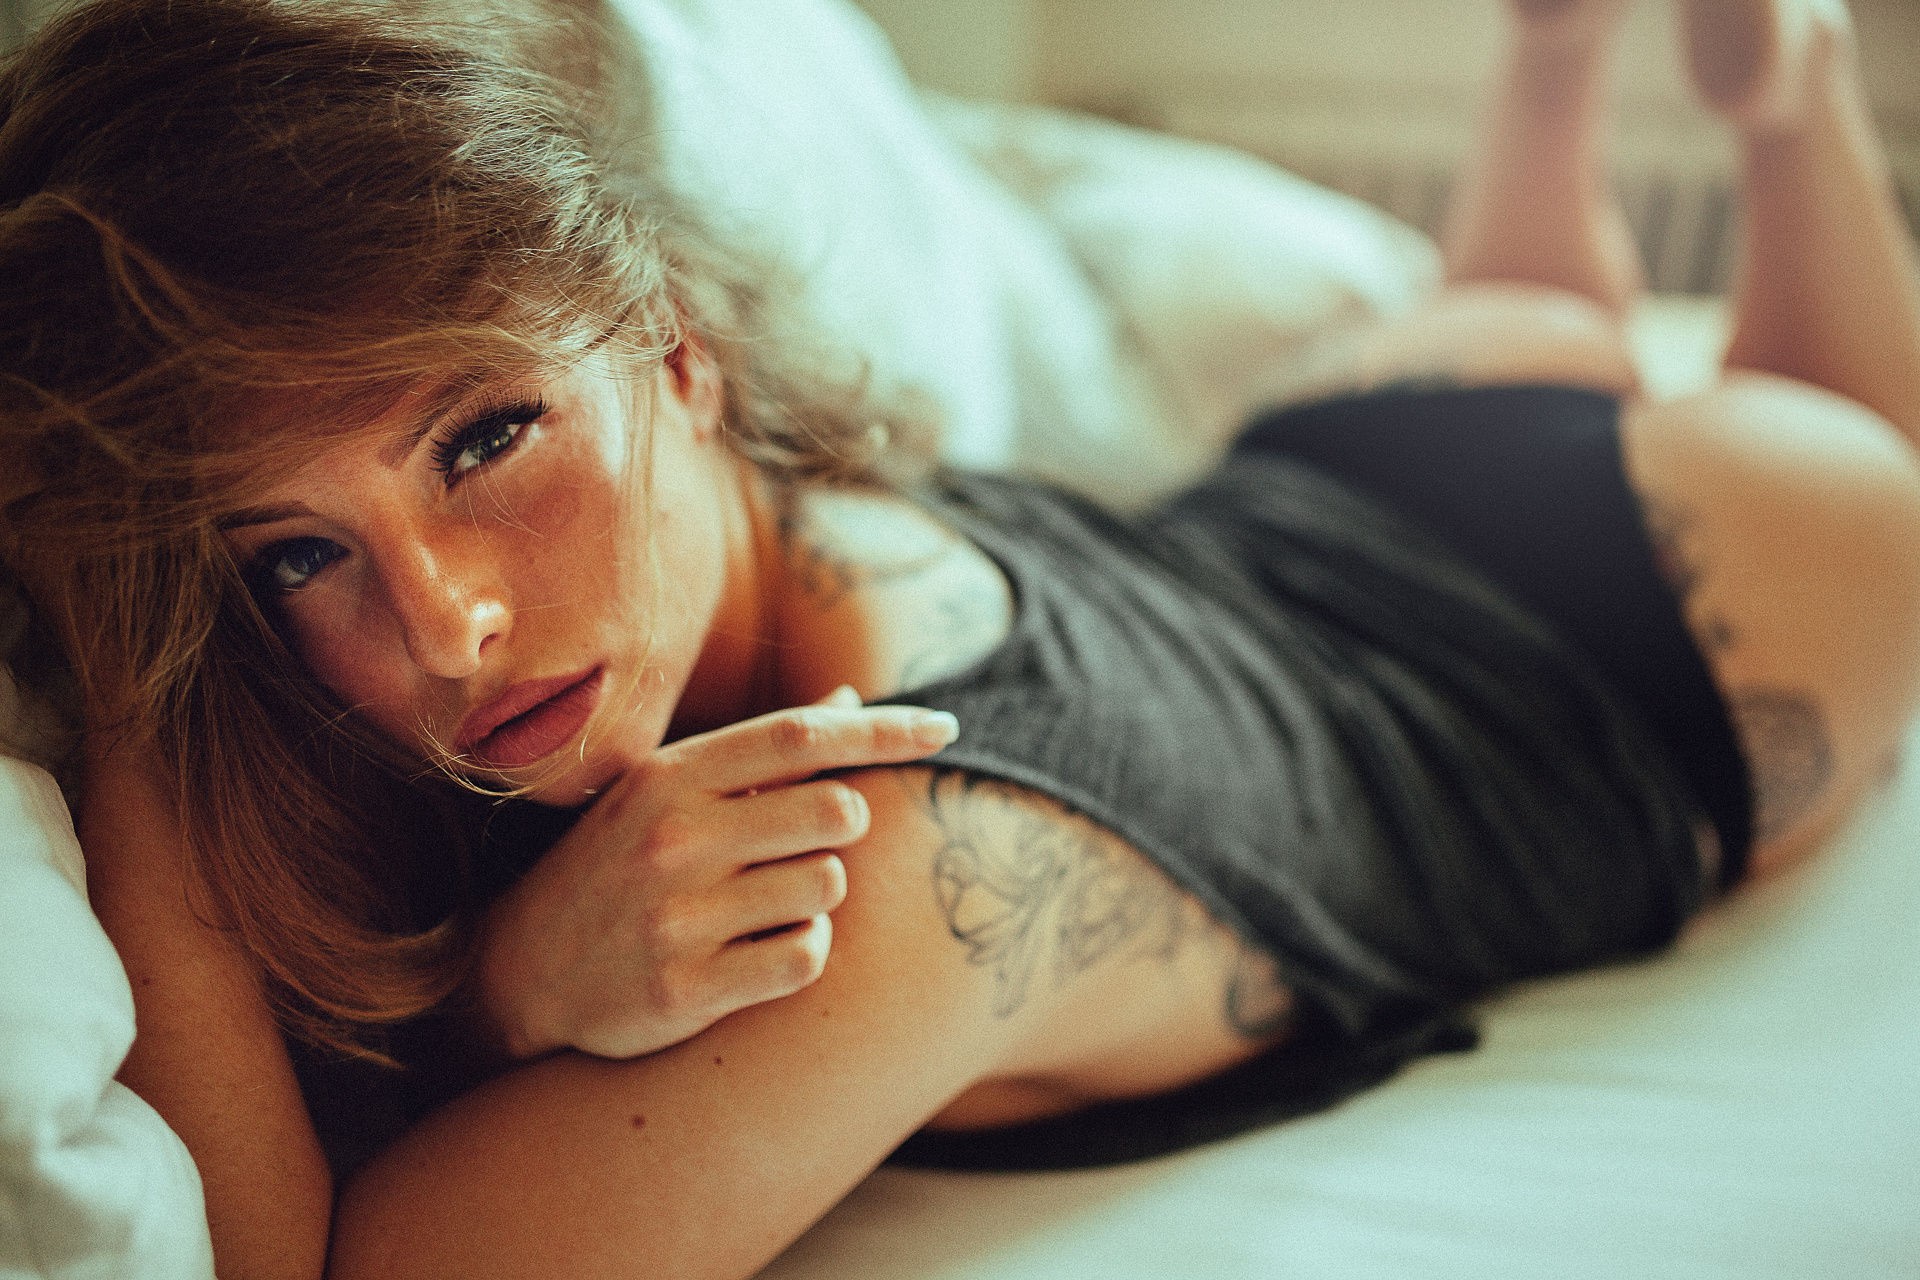 Women Model Andre Josselin Brunette Looking At Viewer Tattoo Black Tops 1920x1280